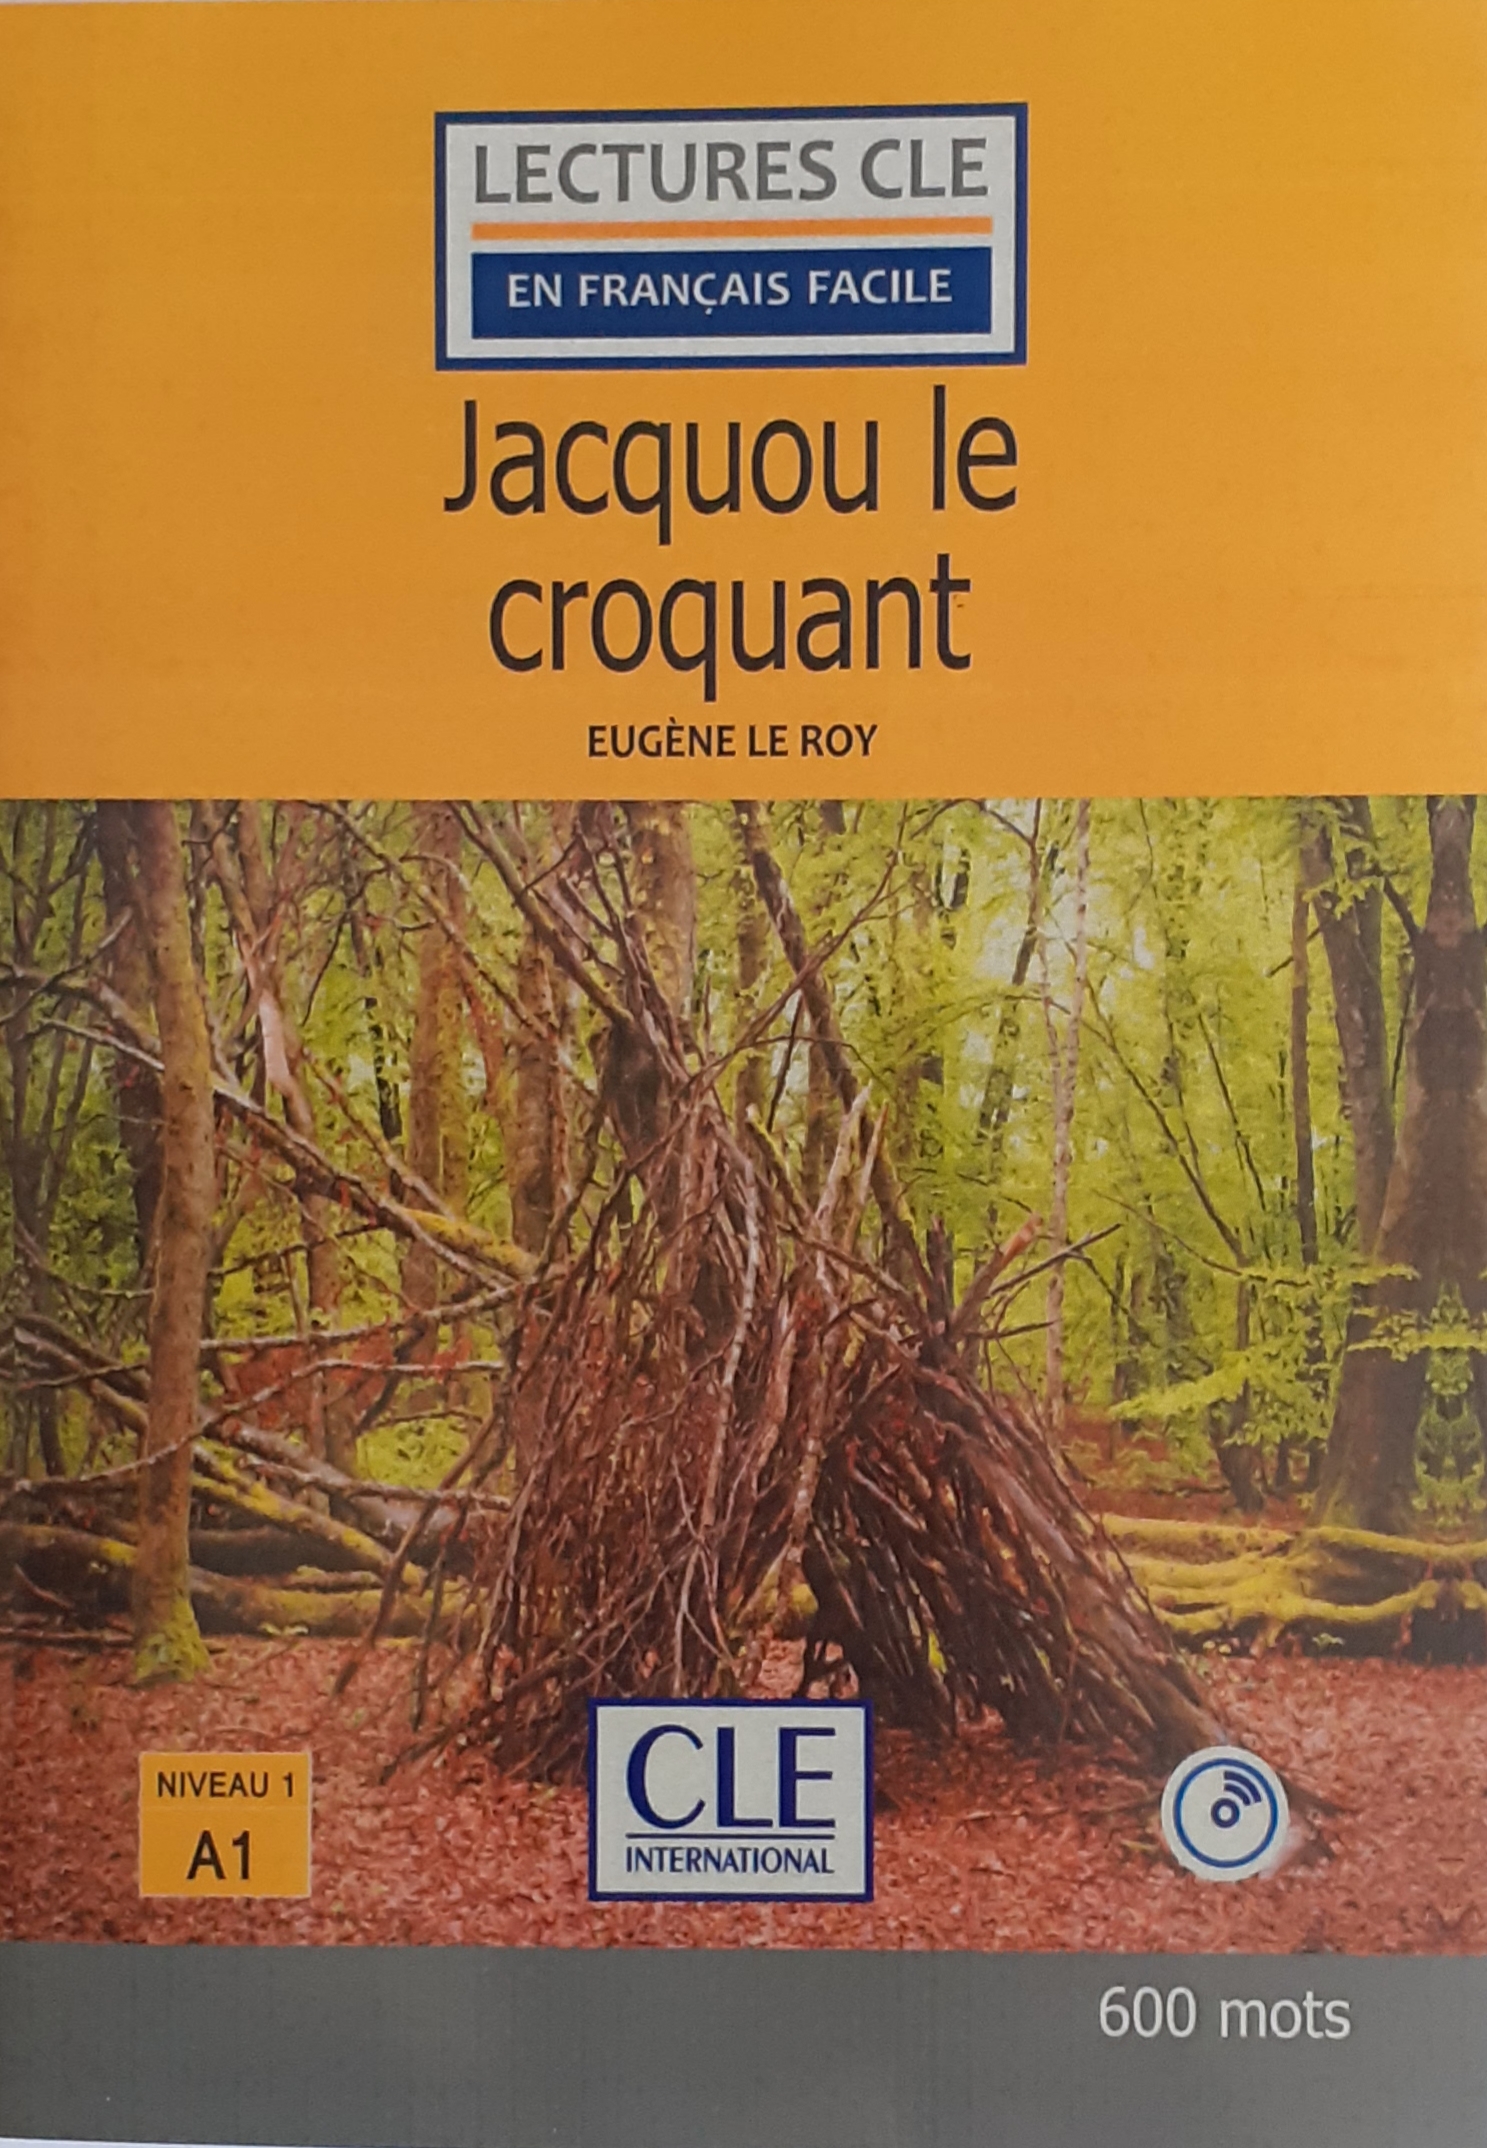 کتاب داستان فرانسه ژاکو لو کروکان Jacquou le croquant